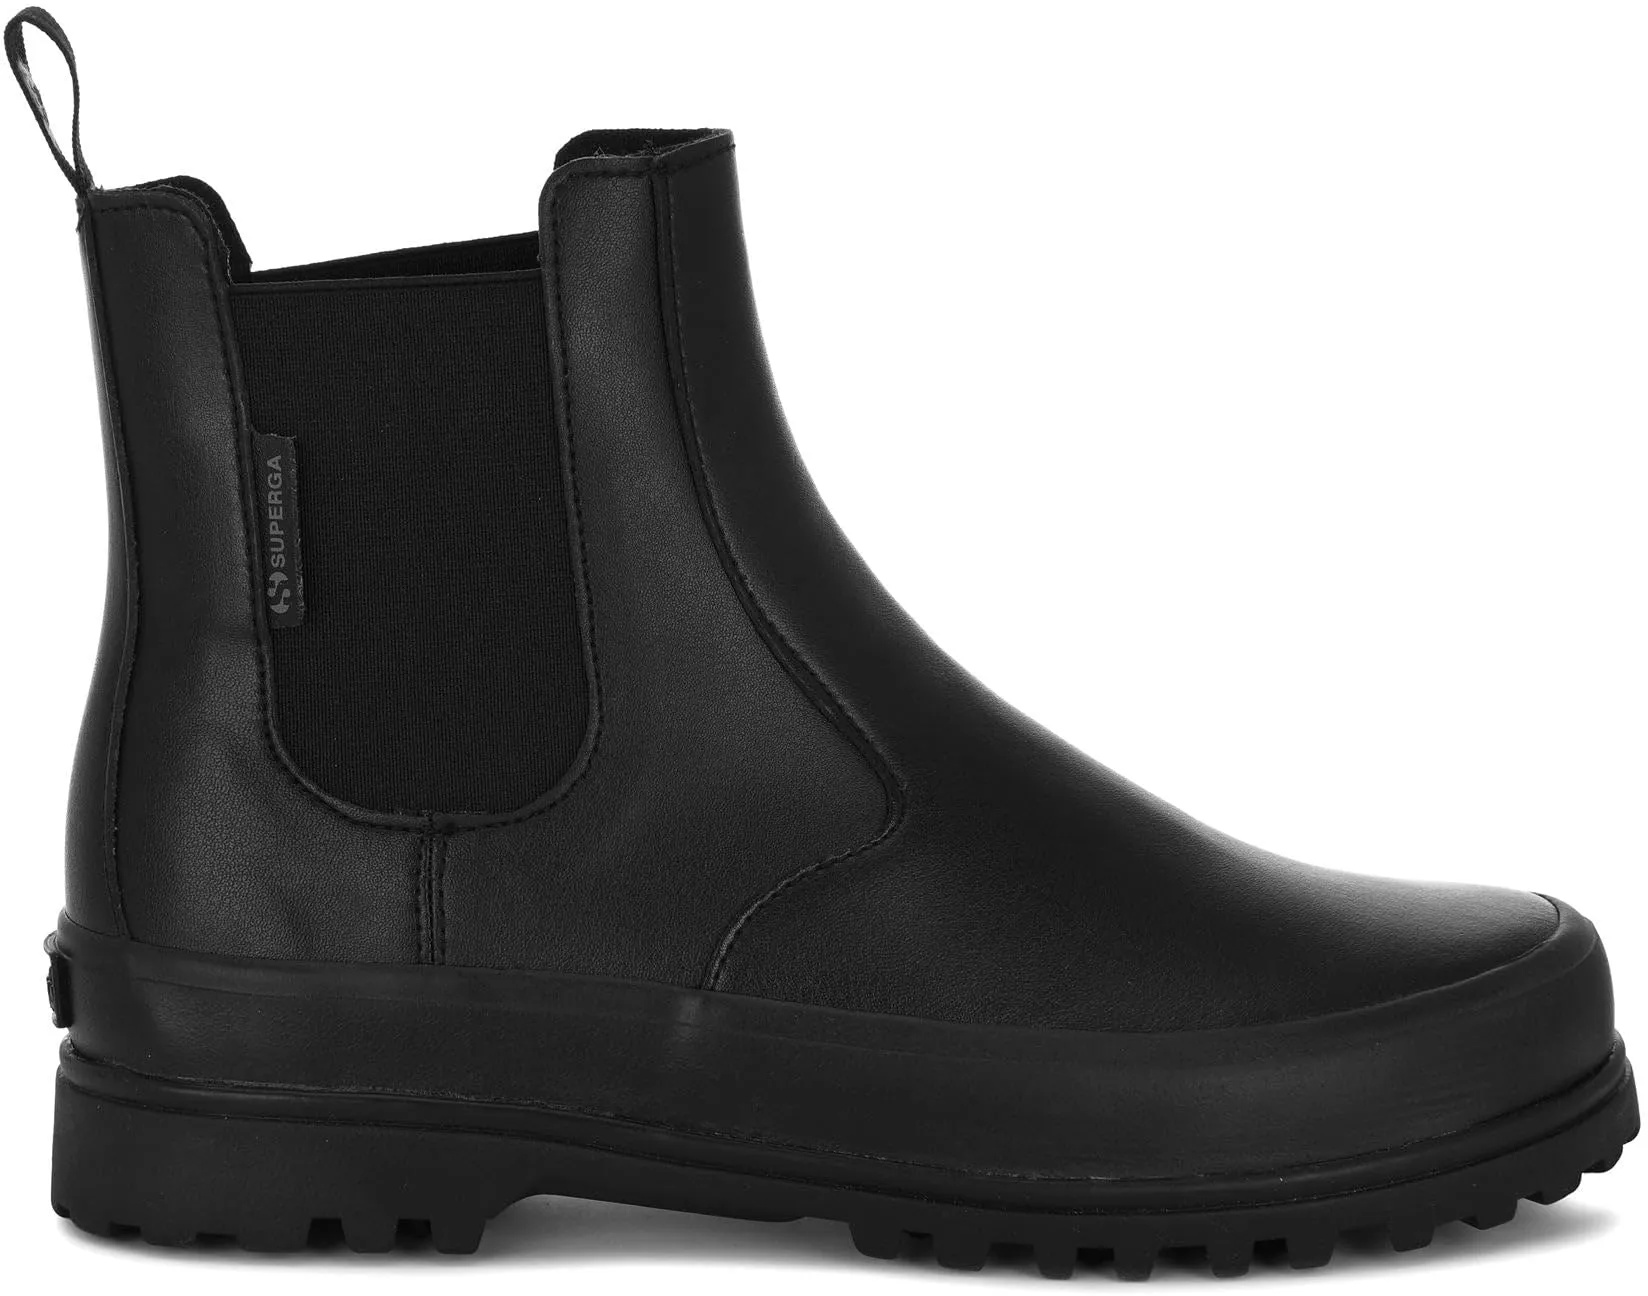 Superga Women's 2678 Alpina Vegan Leather Boots Black in Size 37 - 37 EU